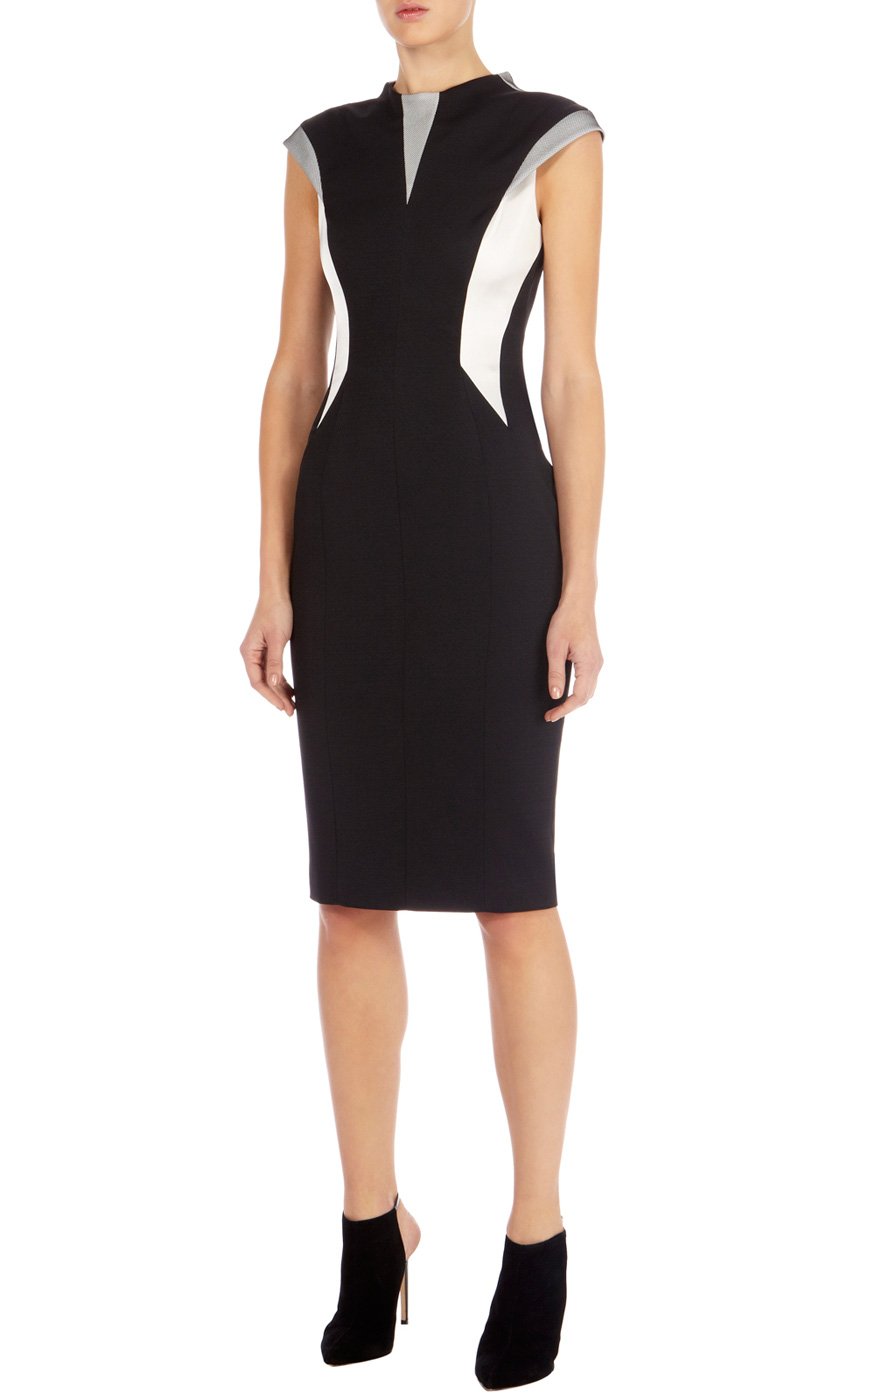 Lyst - Karen Millen Graphic Color Block Dress in Black